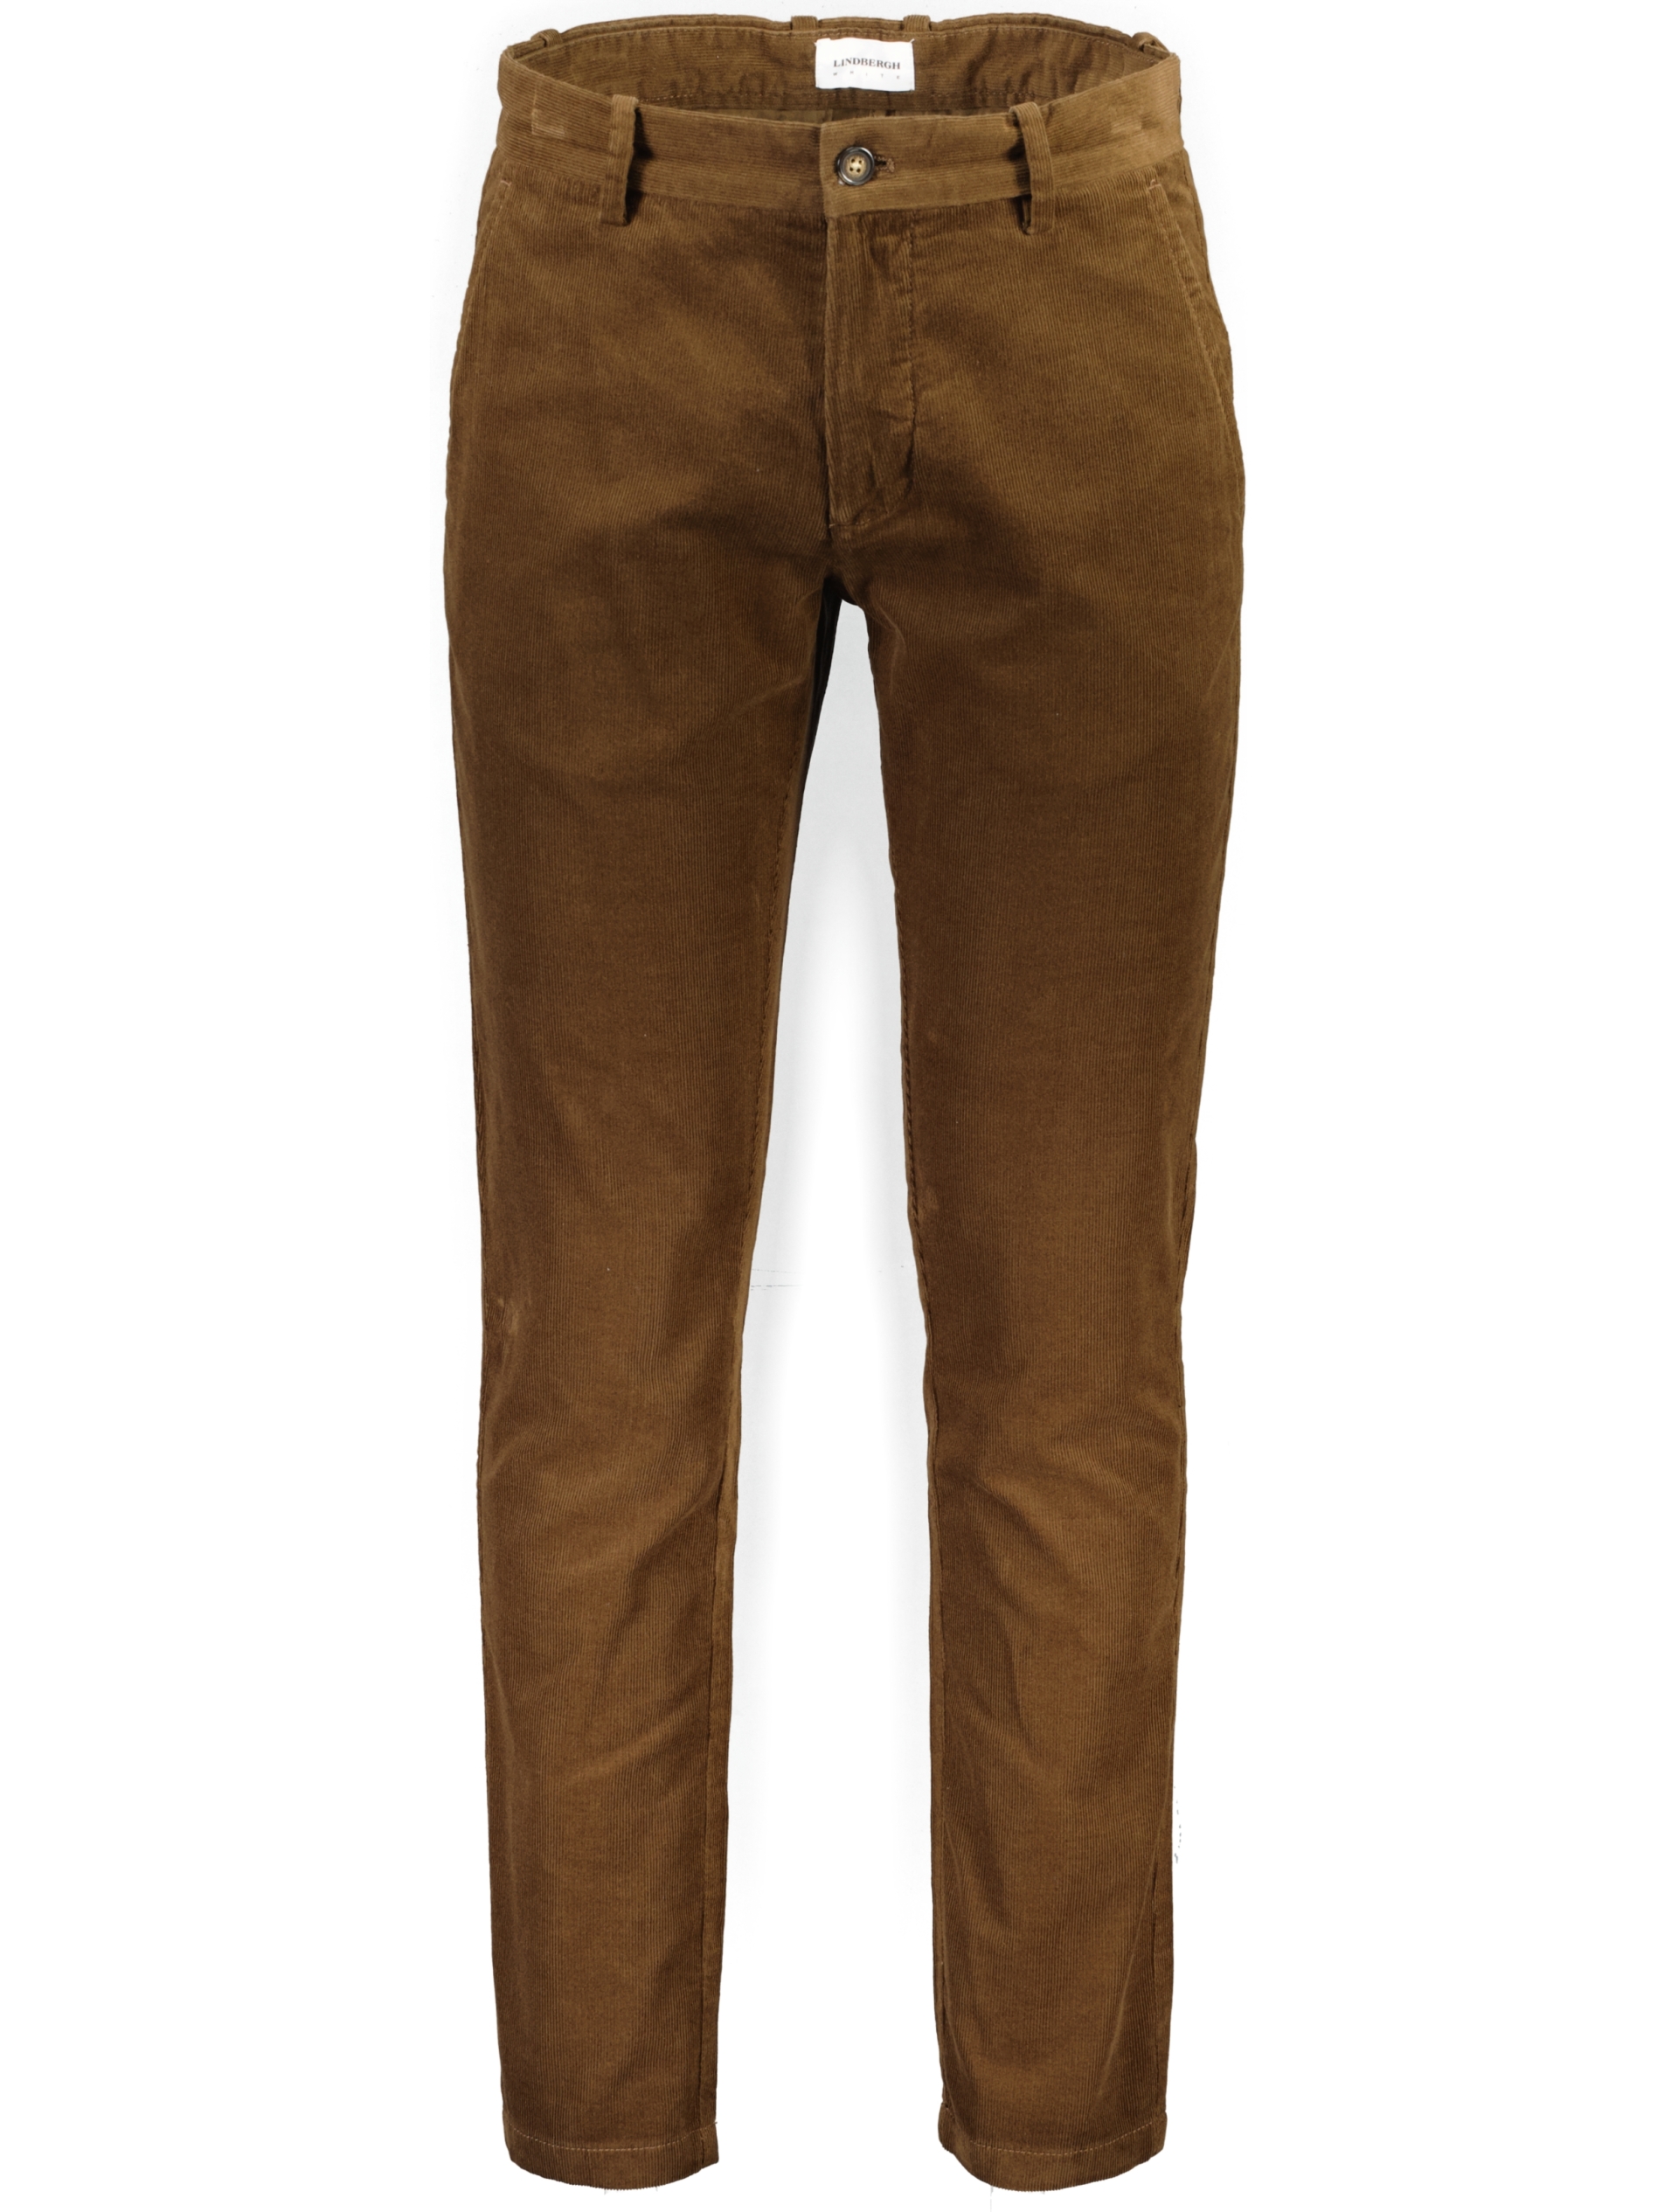 Lindbergh Corduroy trousers brown / brown